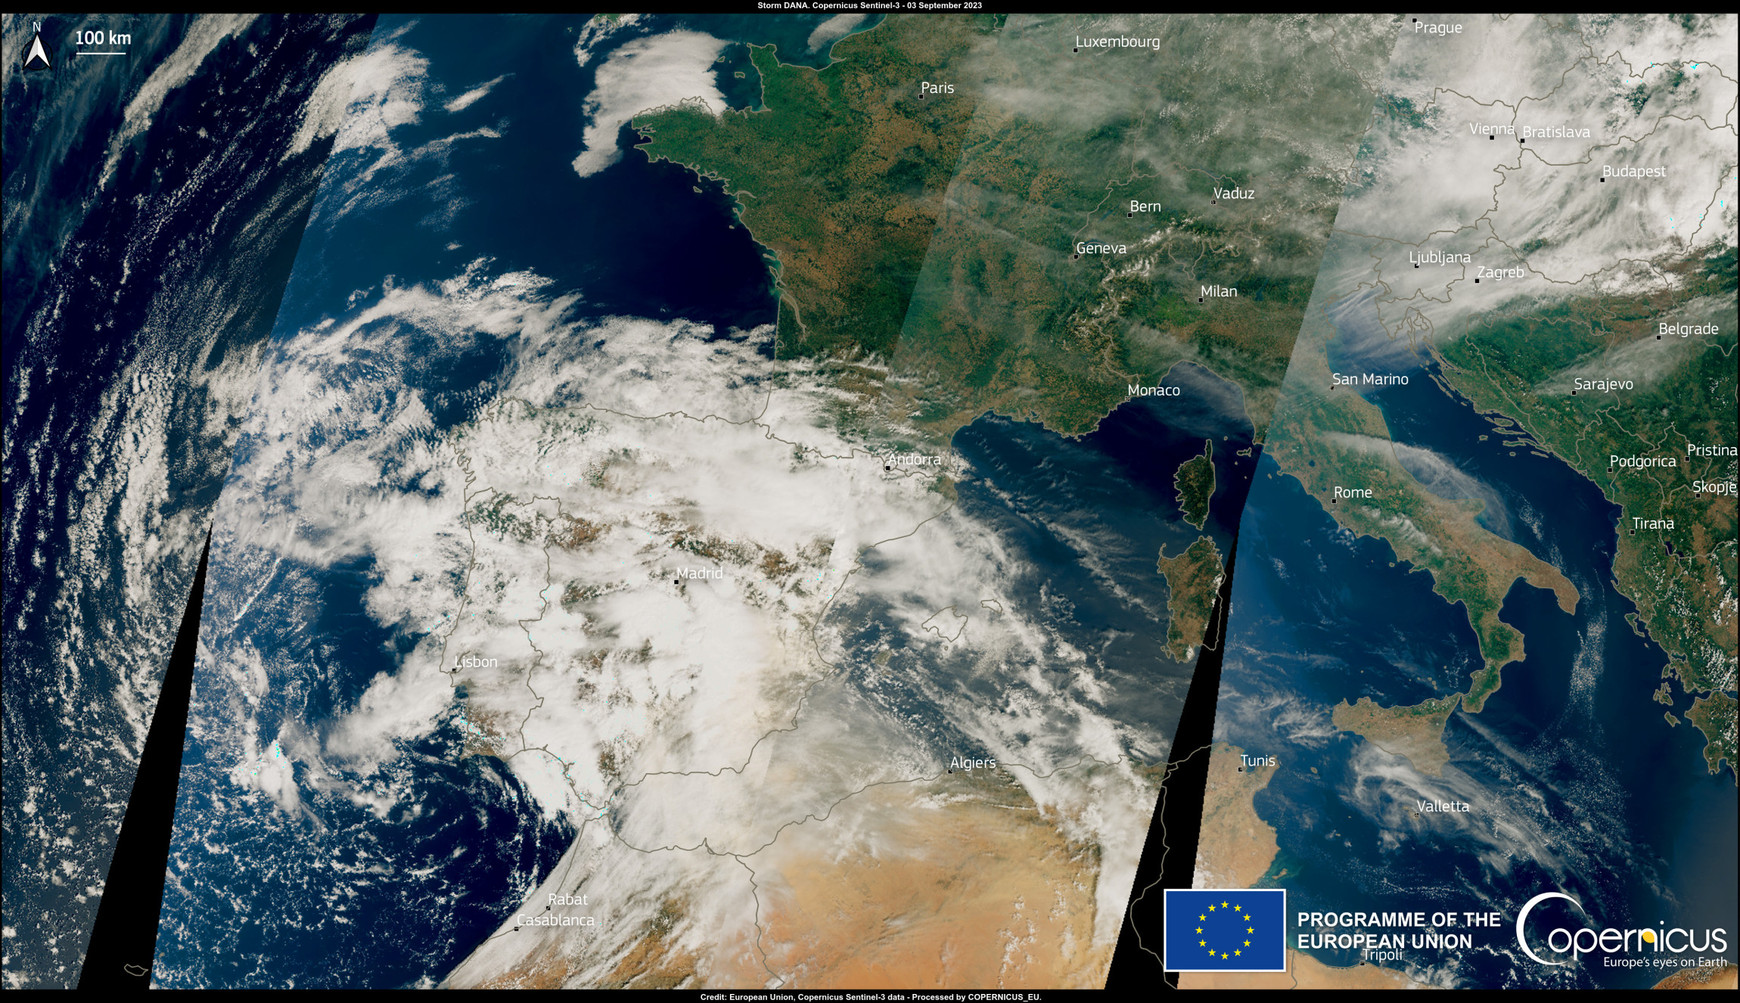 Le slogan du programme est "la Terre vue par l'Europe".© European Union, Copernicus Sentinel-3 imagery Copernicus : "la Terre vue par l'Europe"